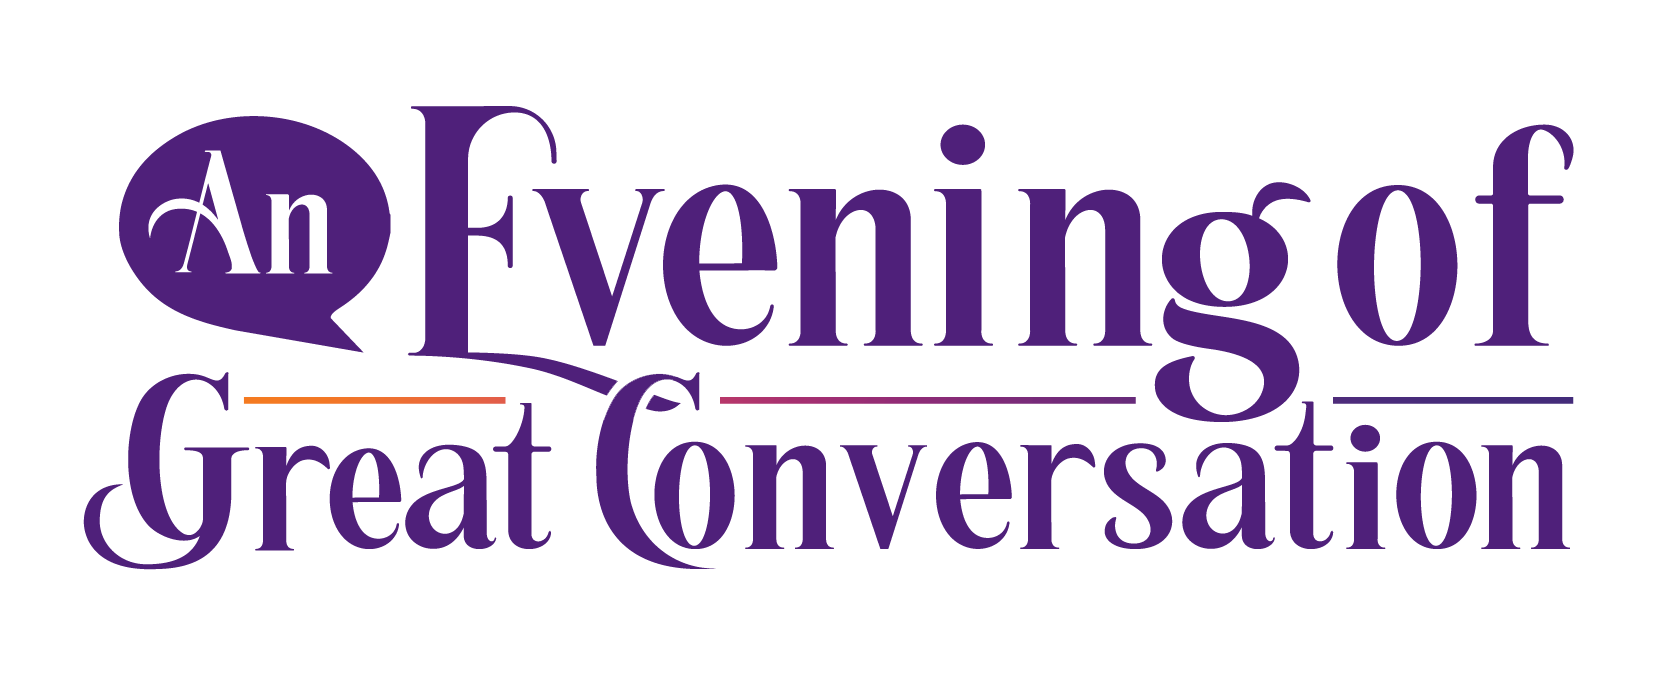 An Evening of Great COnversation